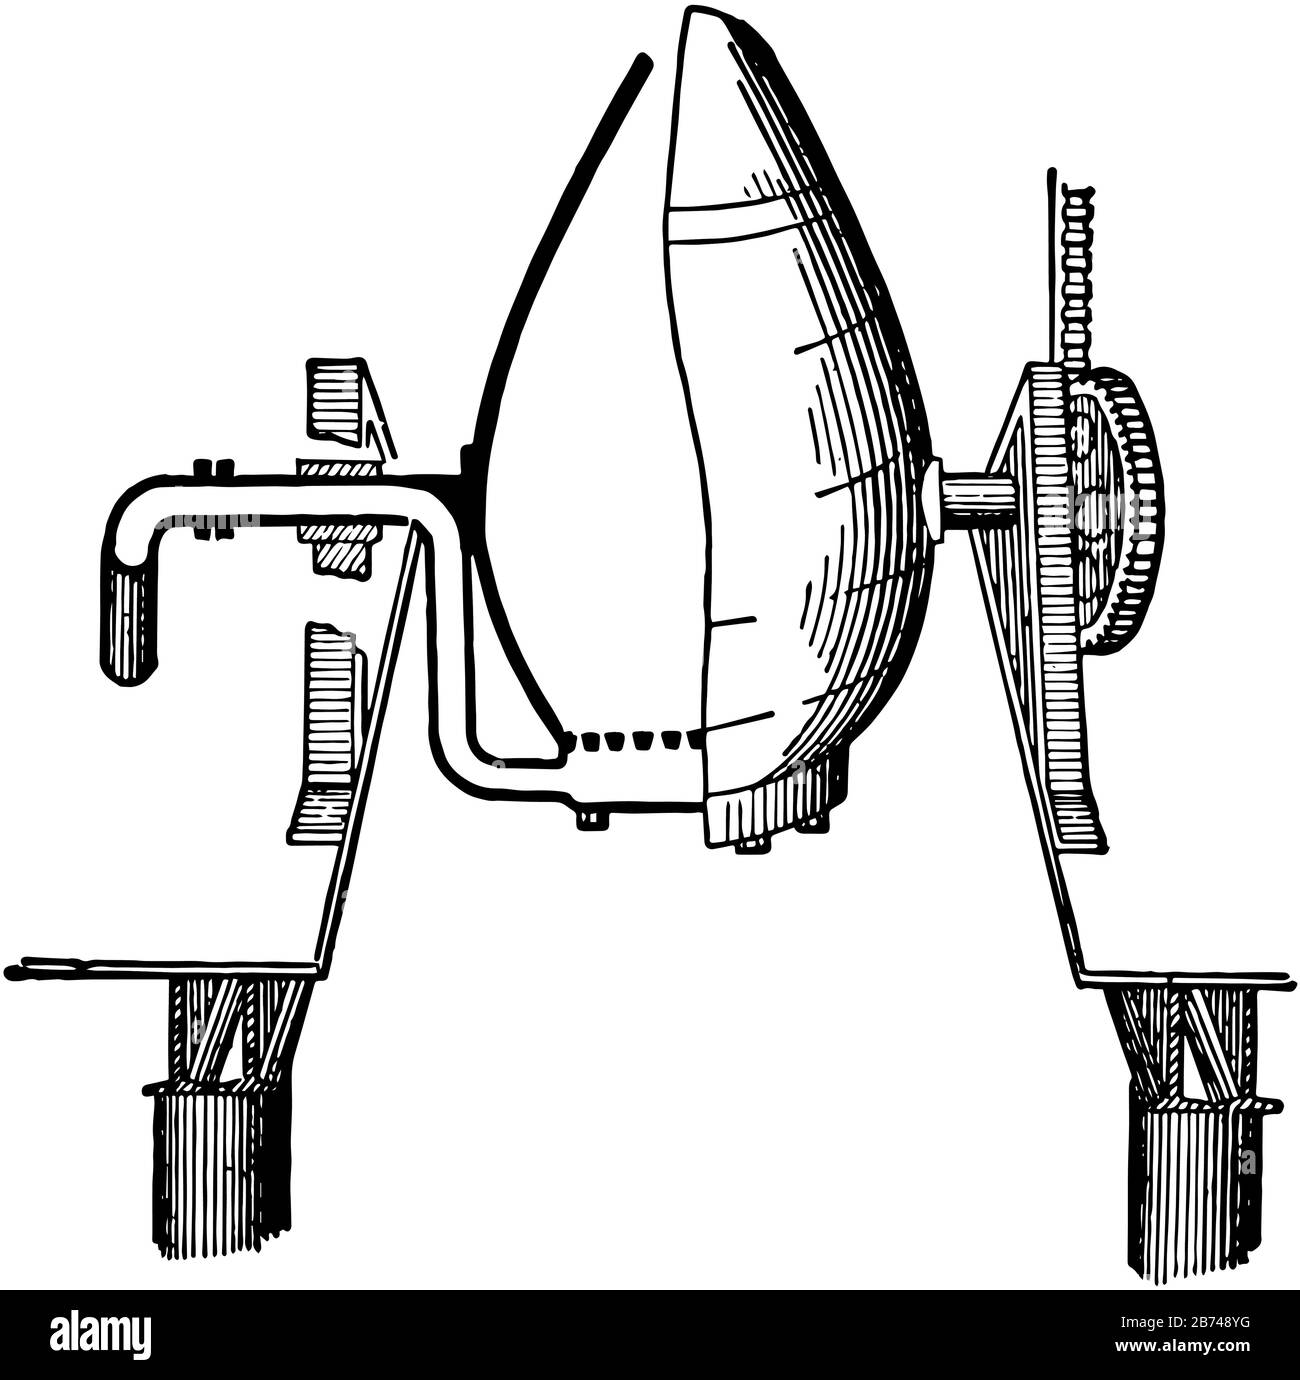 Esta ilustración representa Converter, que es un horno con forma de huevo, dibujo de líneas vintage o ilustración de grabado Imagen Vector de stock Alamy